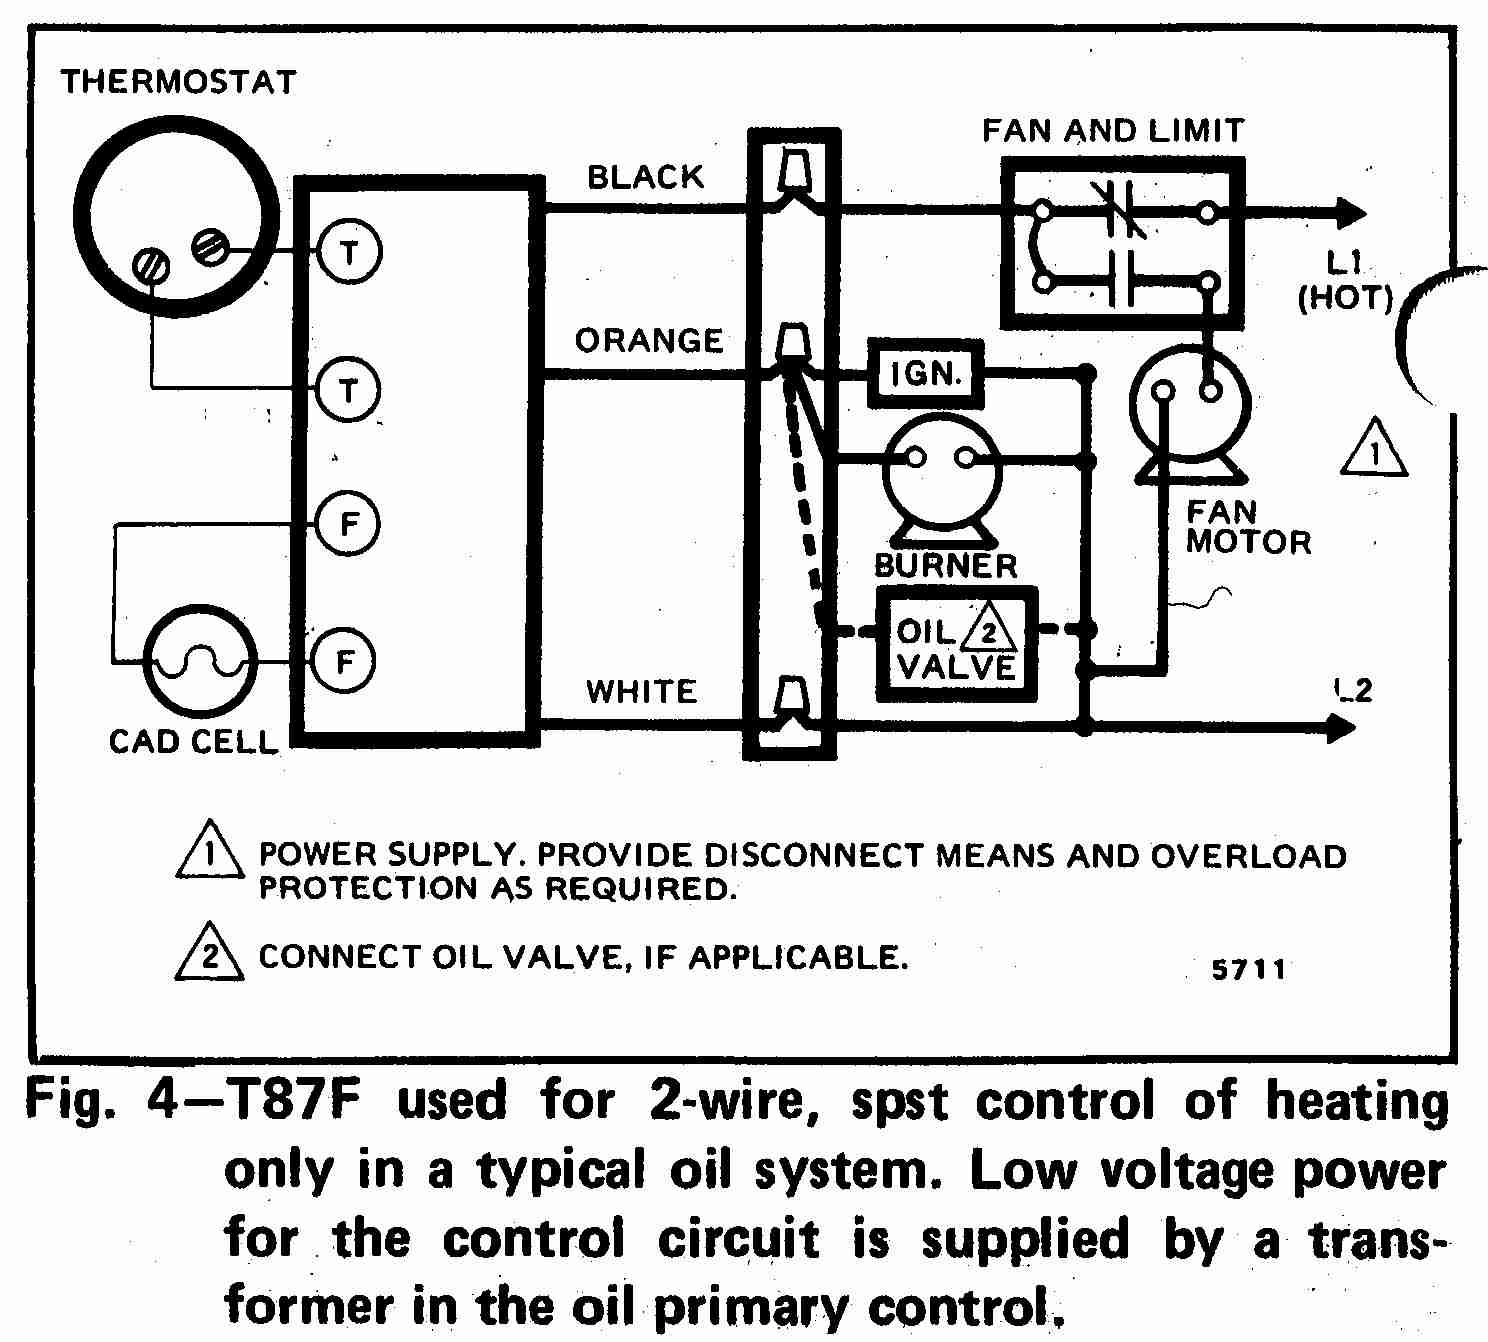 Ge Thermostat Wiring Diagram Free Picture Schematic - Wiring Data - Rheem Heat Pump Wiring Diagram